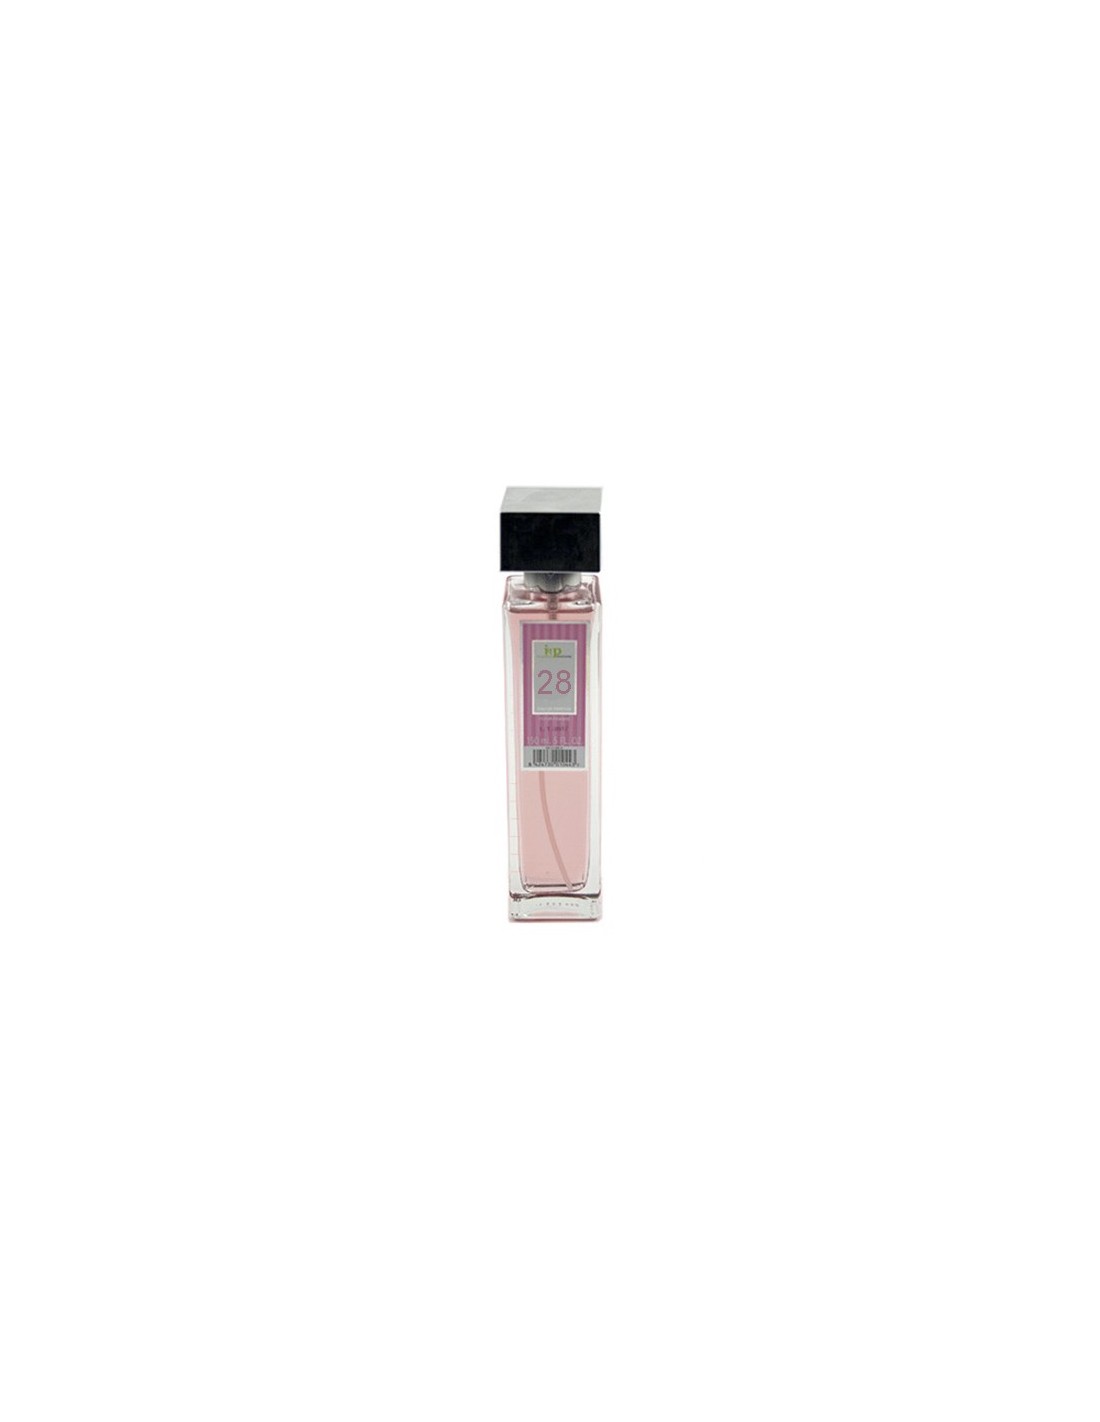 IAP Perfume Mujer N28 150ml